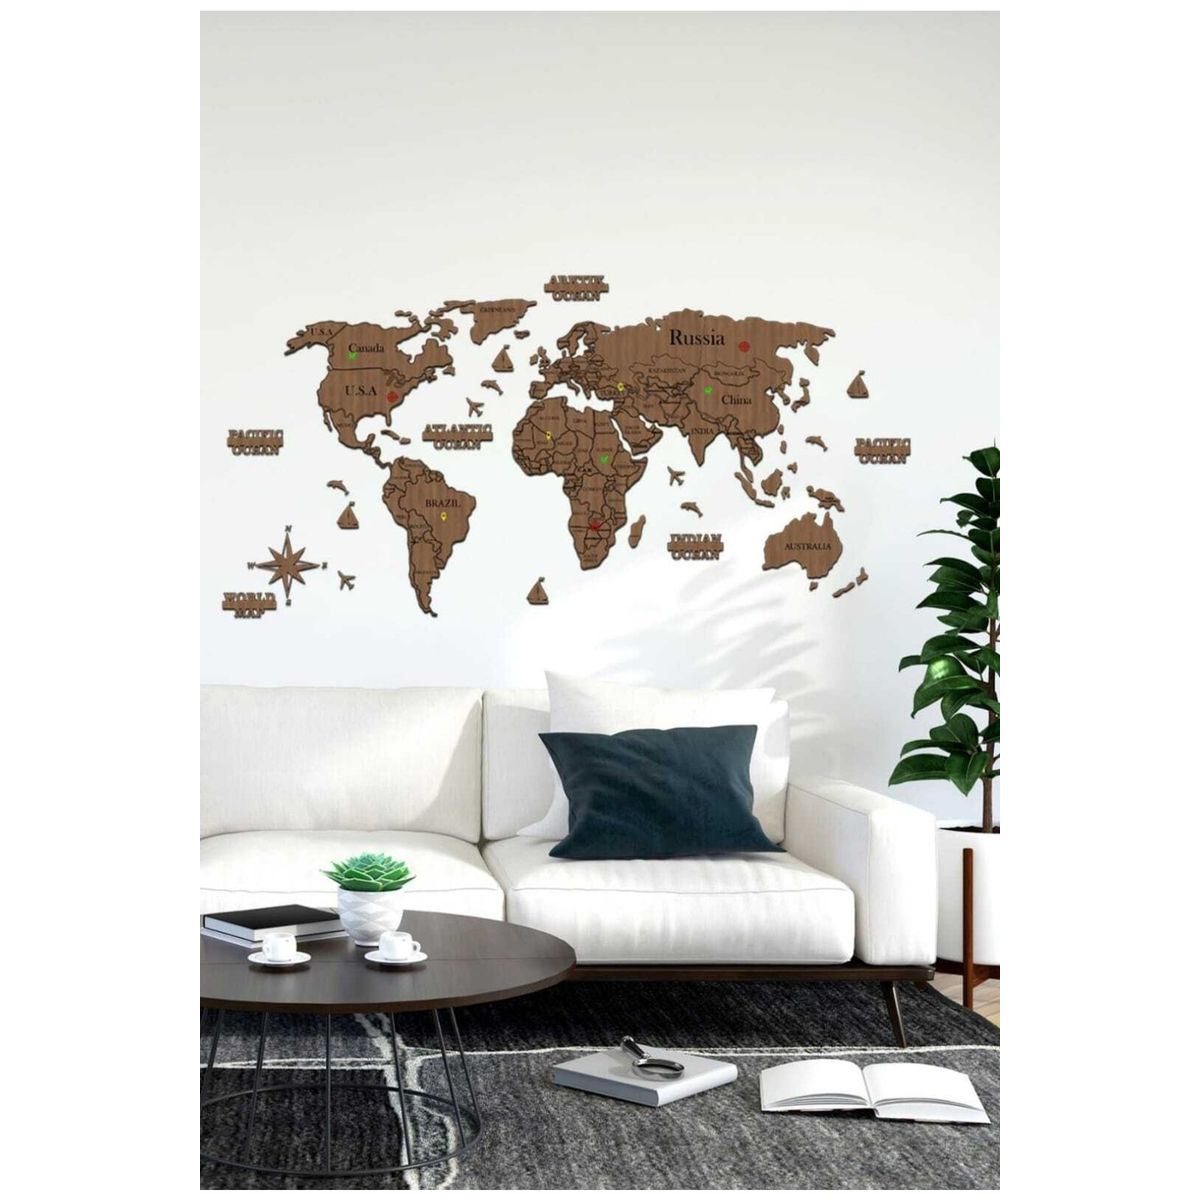 Dünya Haritası Duvar Fiyatları - Sayfa 11